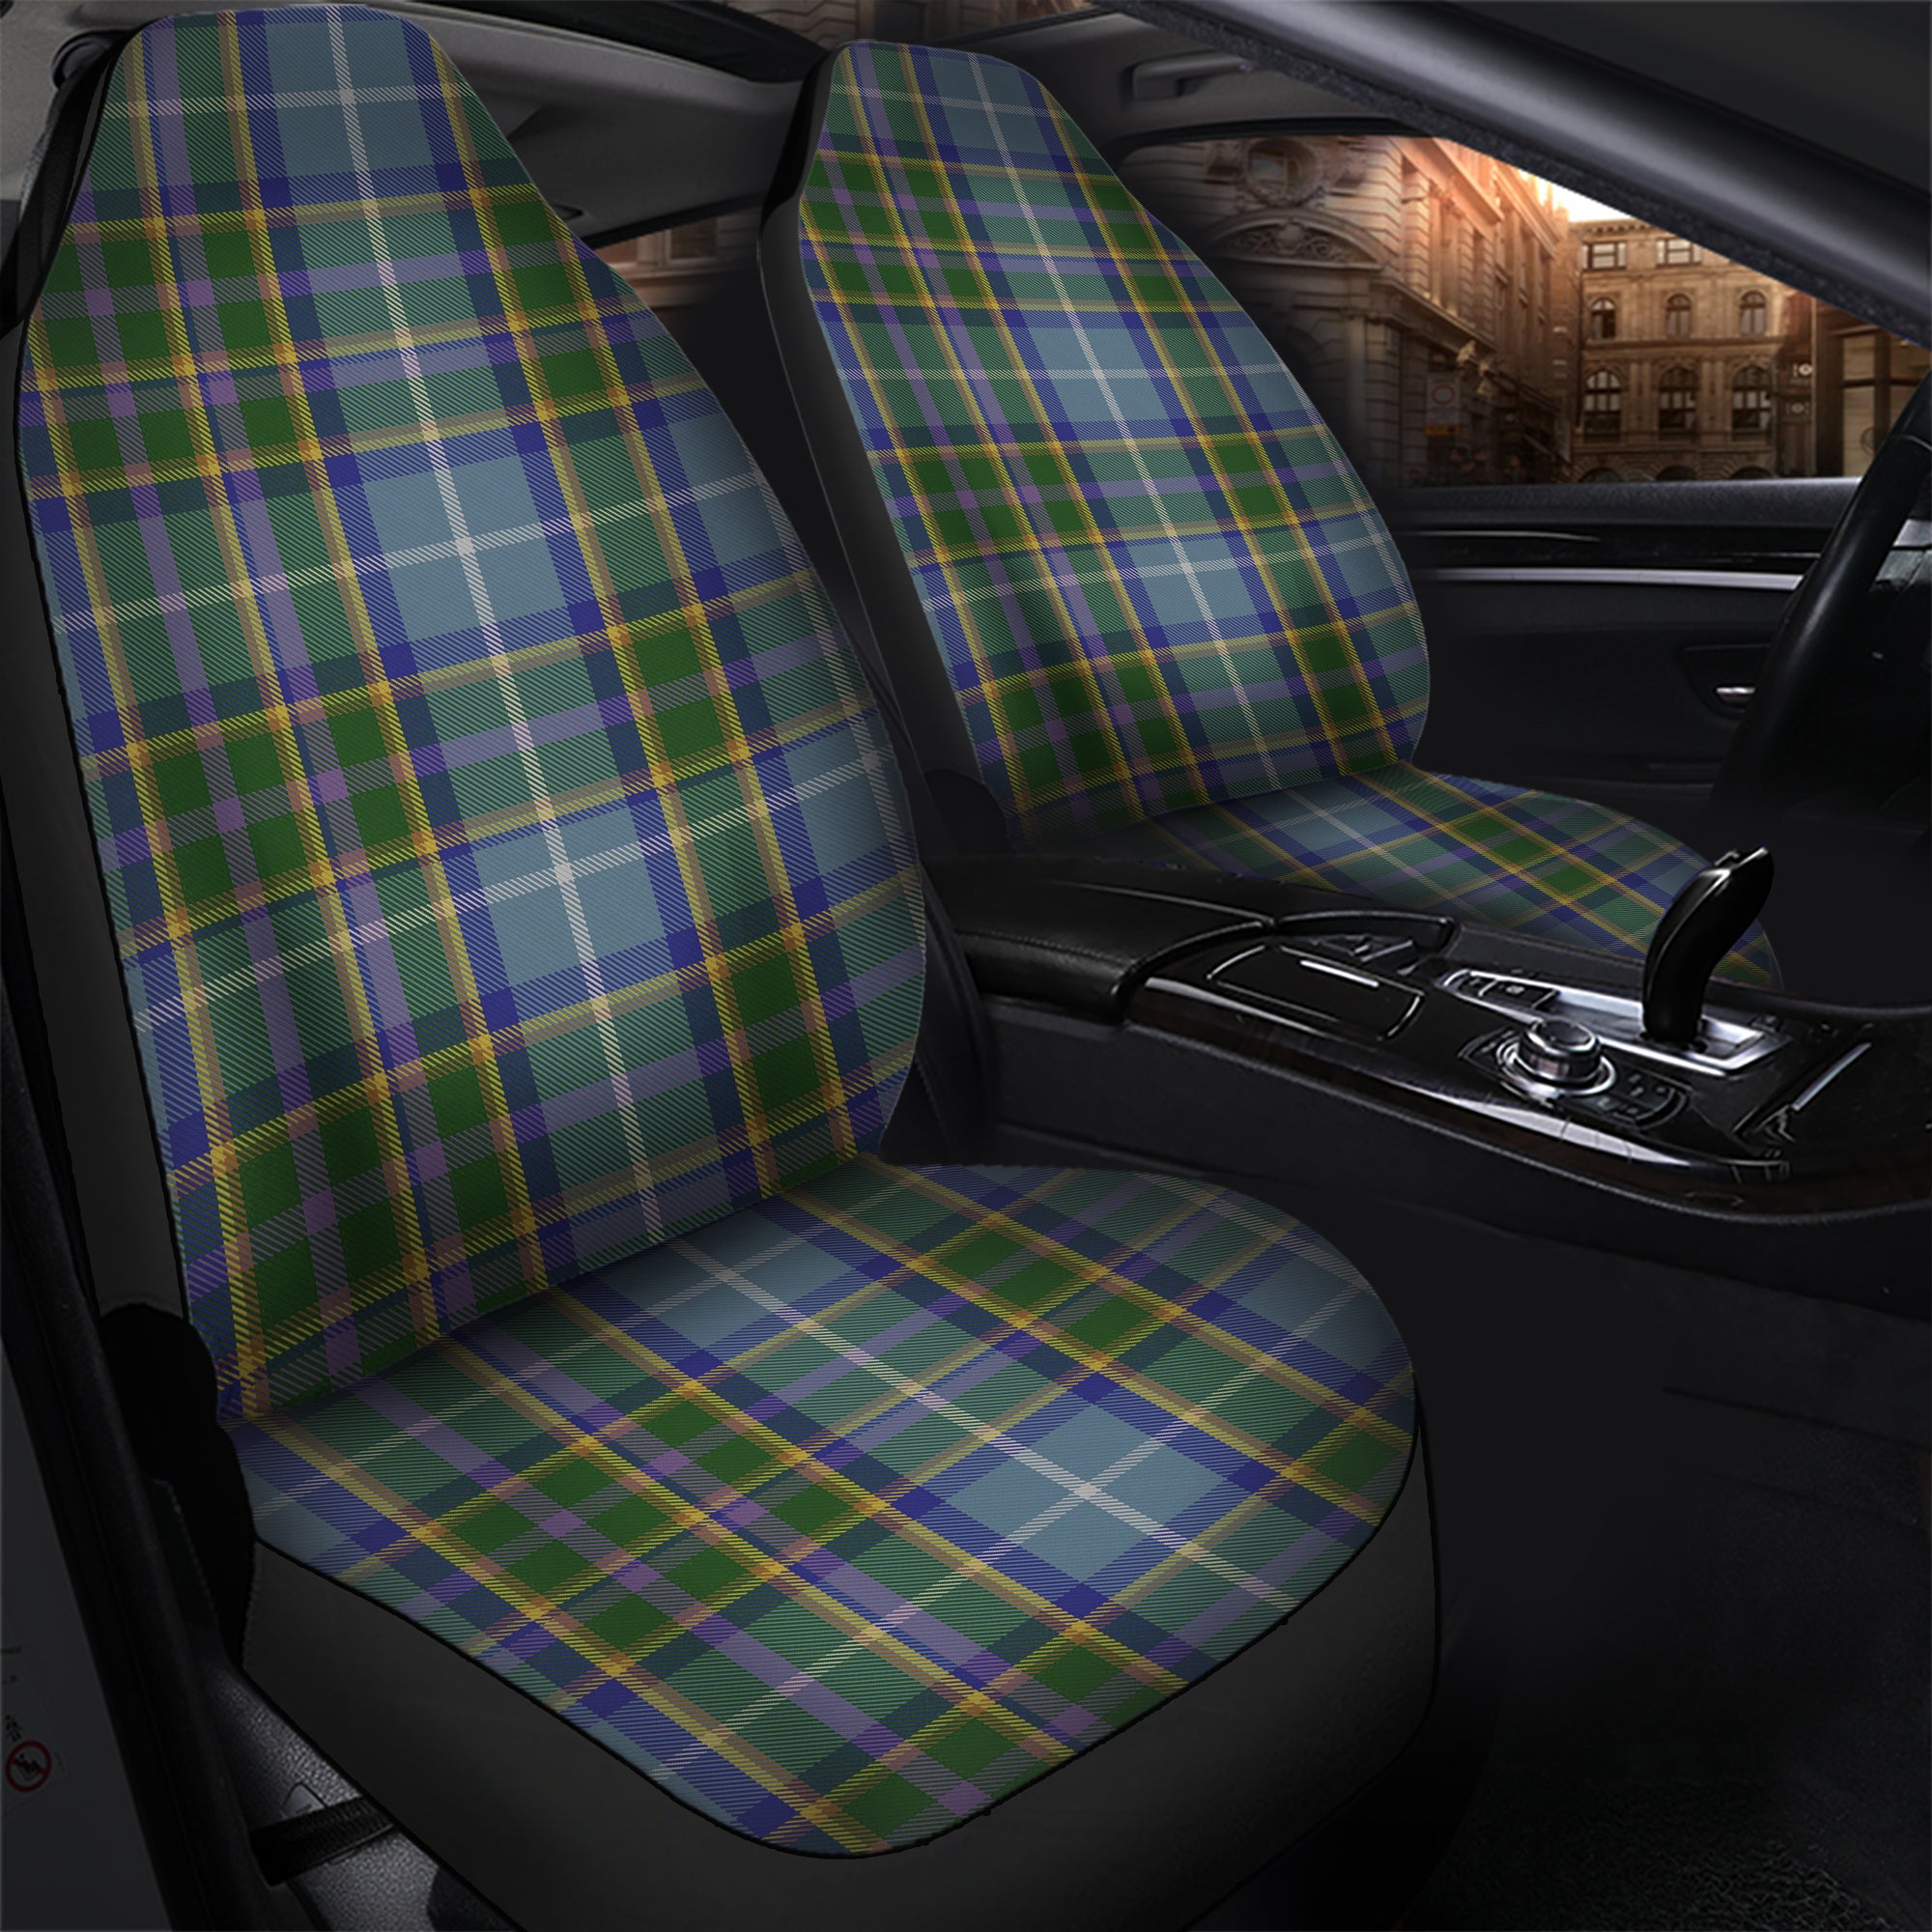 scottish-manx-national-clan-tartan-car-seat-cover